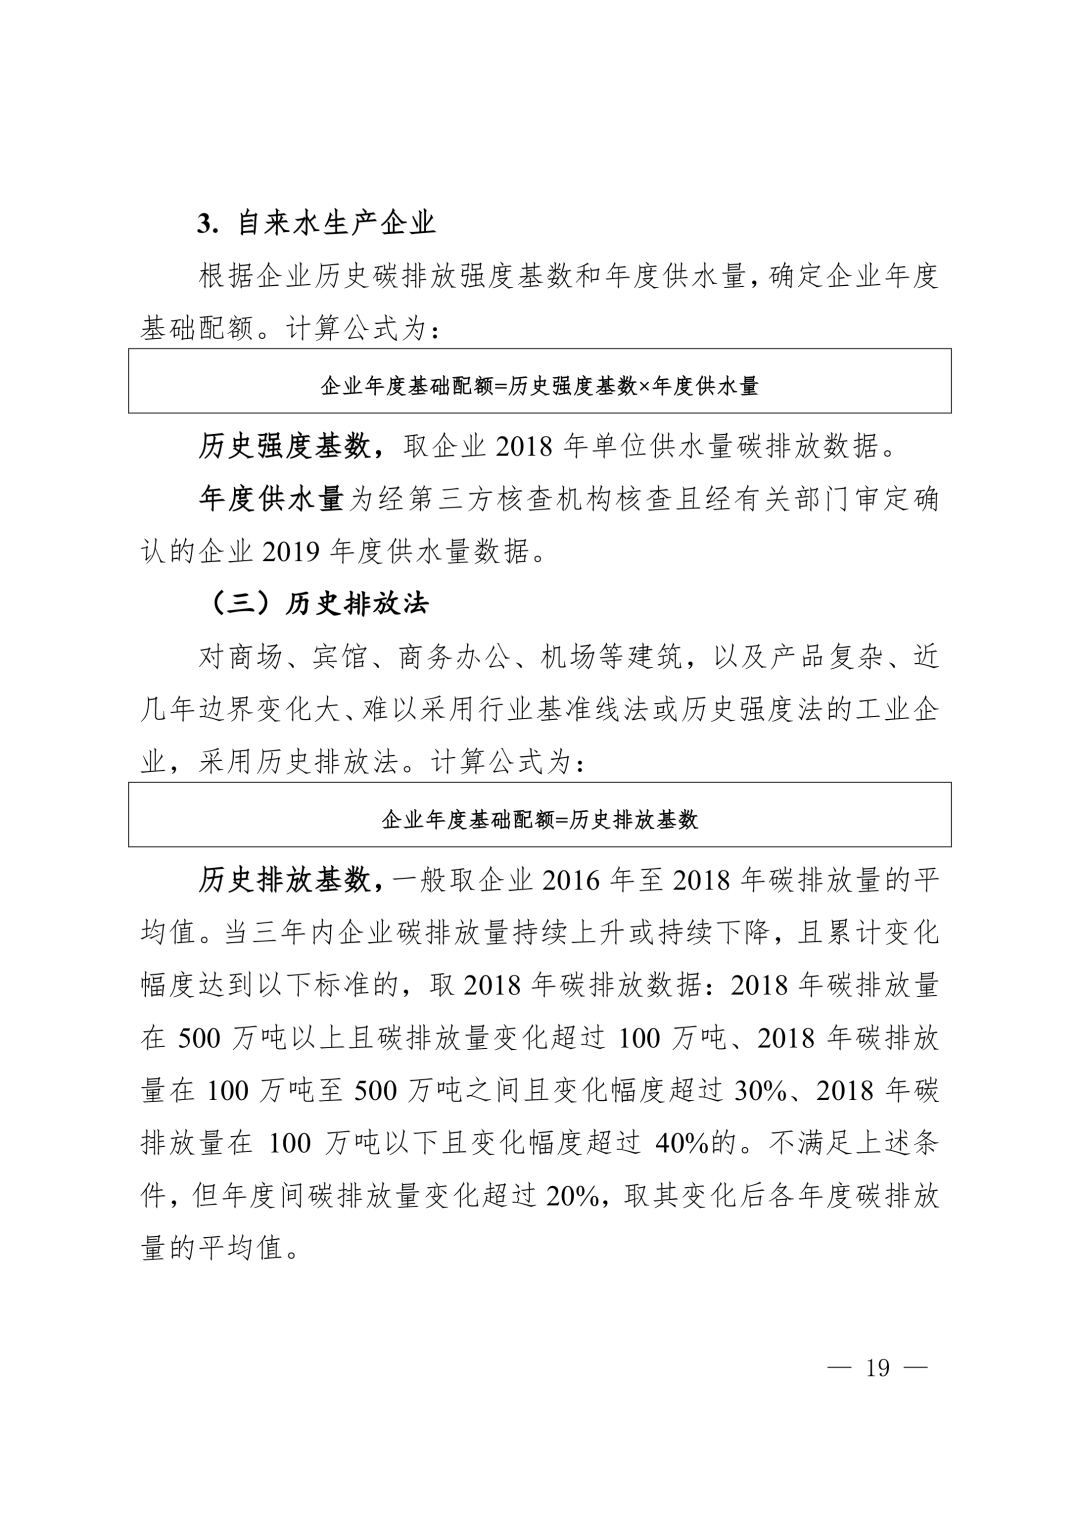 【关注】上海市生态环境局关于印发《上海市纳入碳排放配额管理单位名单（2019版）》及《上海市2019年碳排放配额分配方案》的通知(图19)